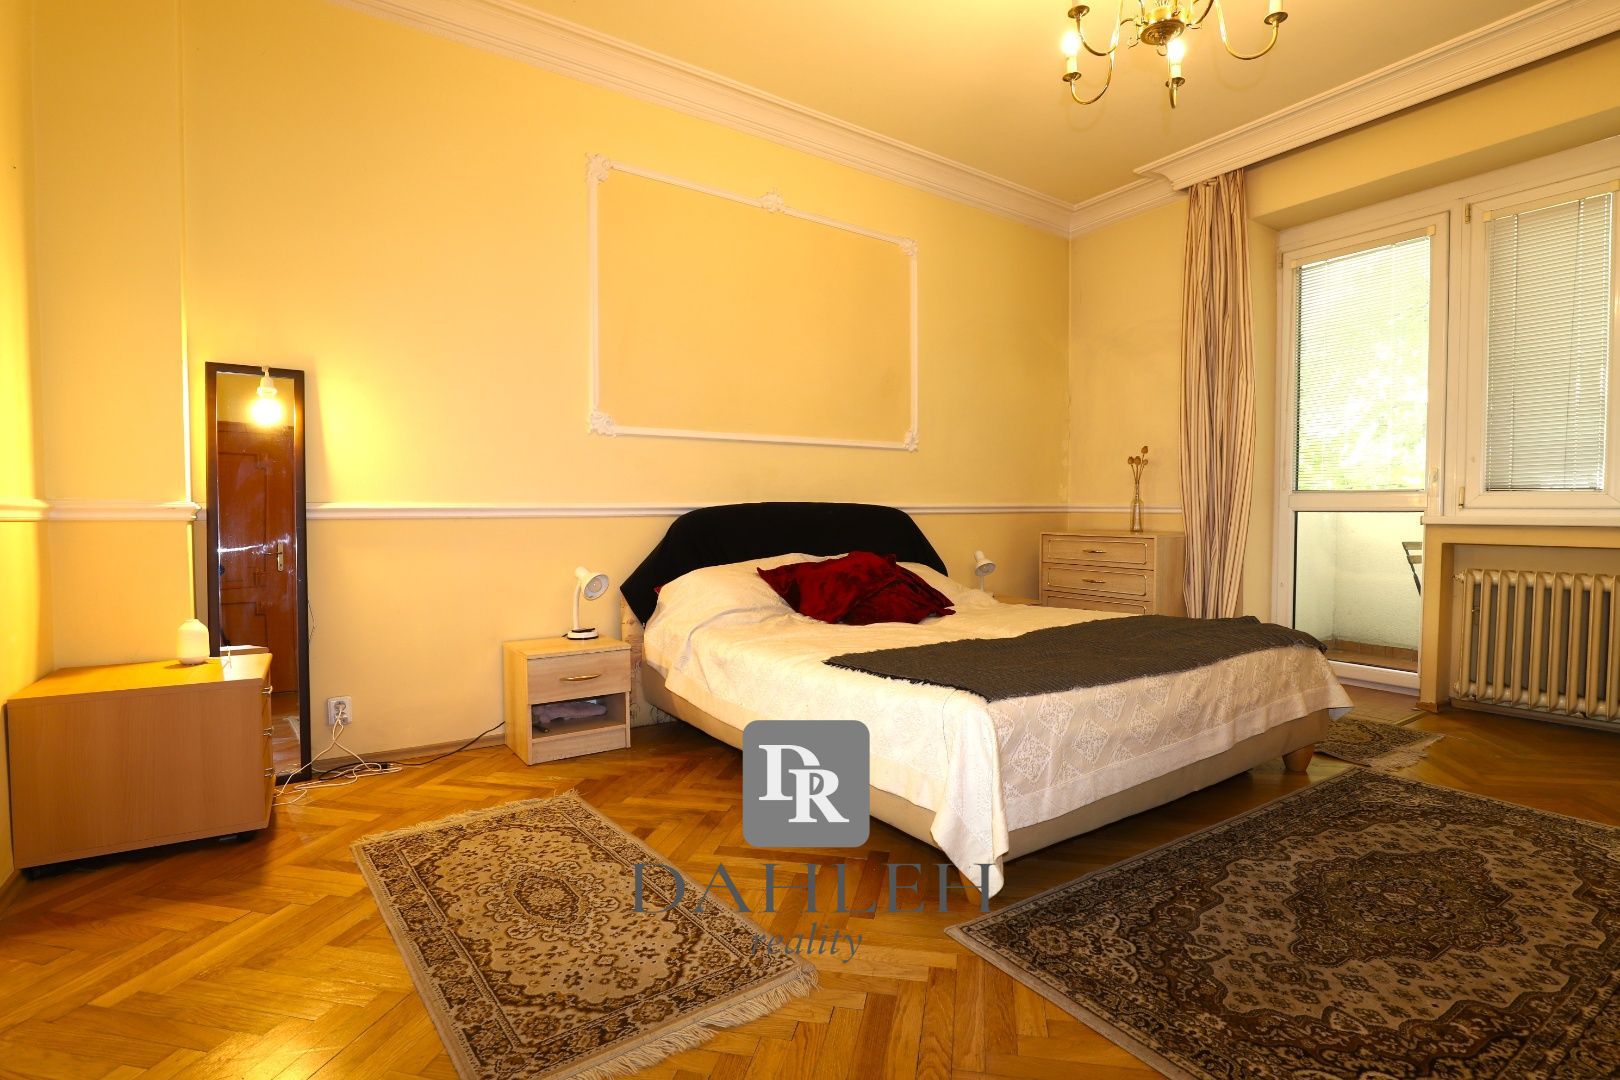 DAHLEH-Na prenájom 2-izbový staromestský byt na Zochovej ulici v Bratislave